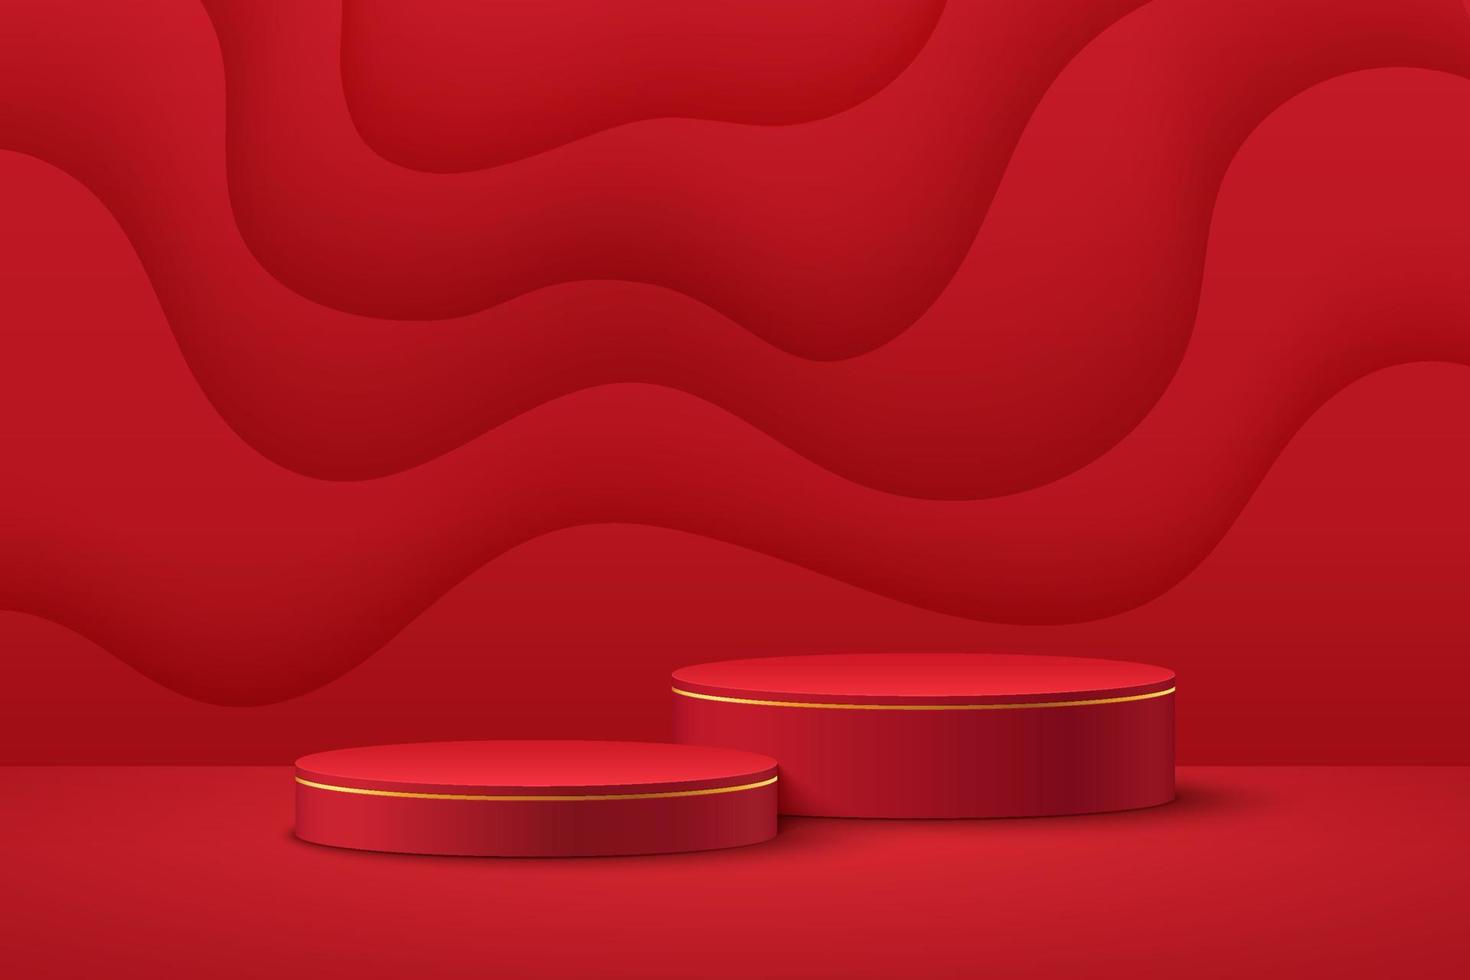 podium de piédestal de cylindre de luxe rouge et or réaliste avec scène ondulée en couches dans un style découpé en papier. salle de studio abstraite de vecteur avec plate-forme 3d géométrique. scène minimale pour l'affichage de la promotion.